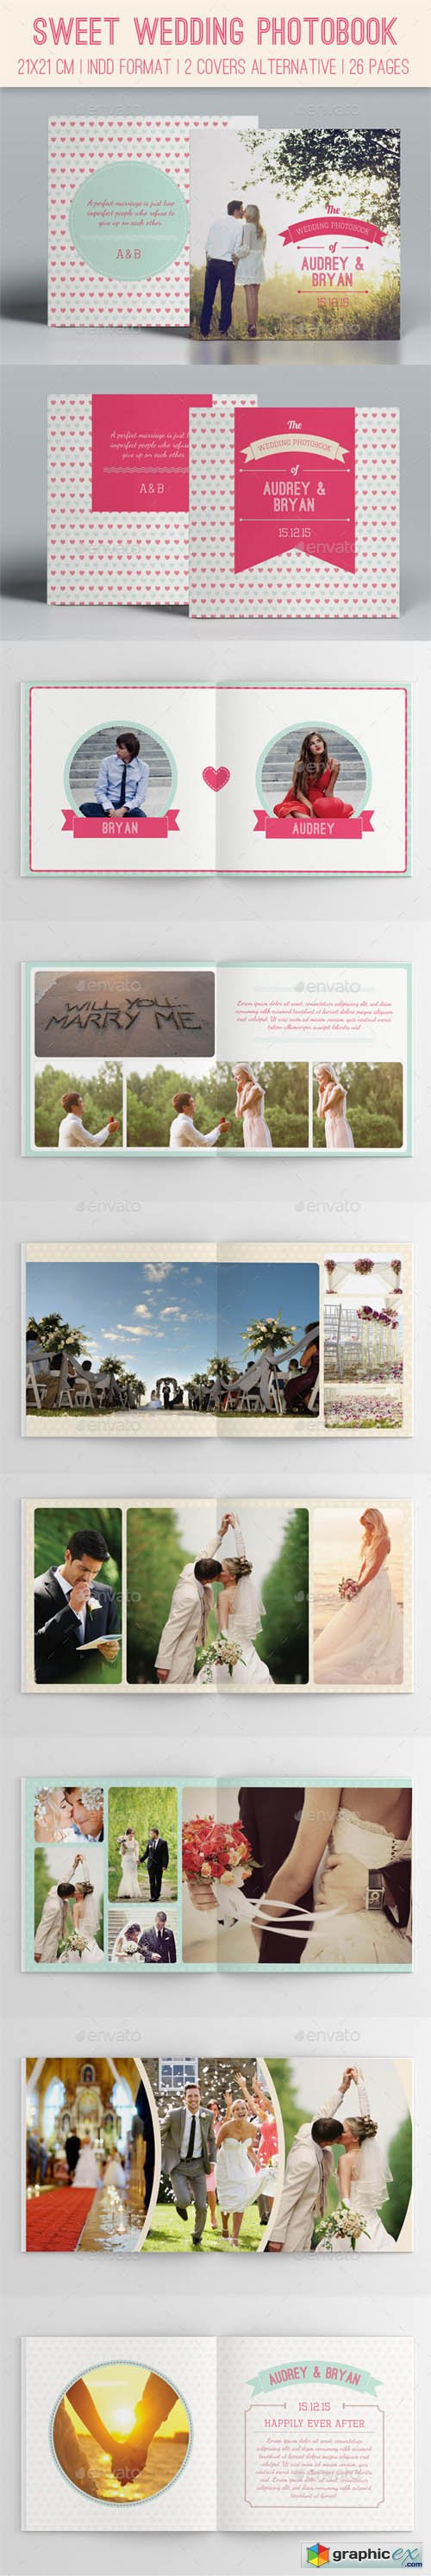 Sweet Wedding Photobook